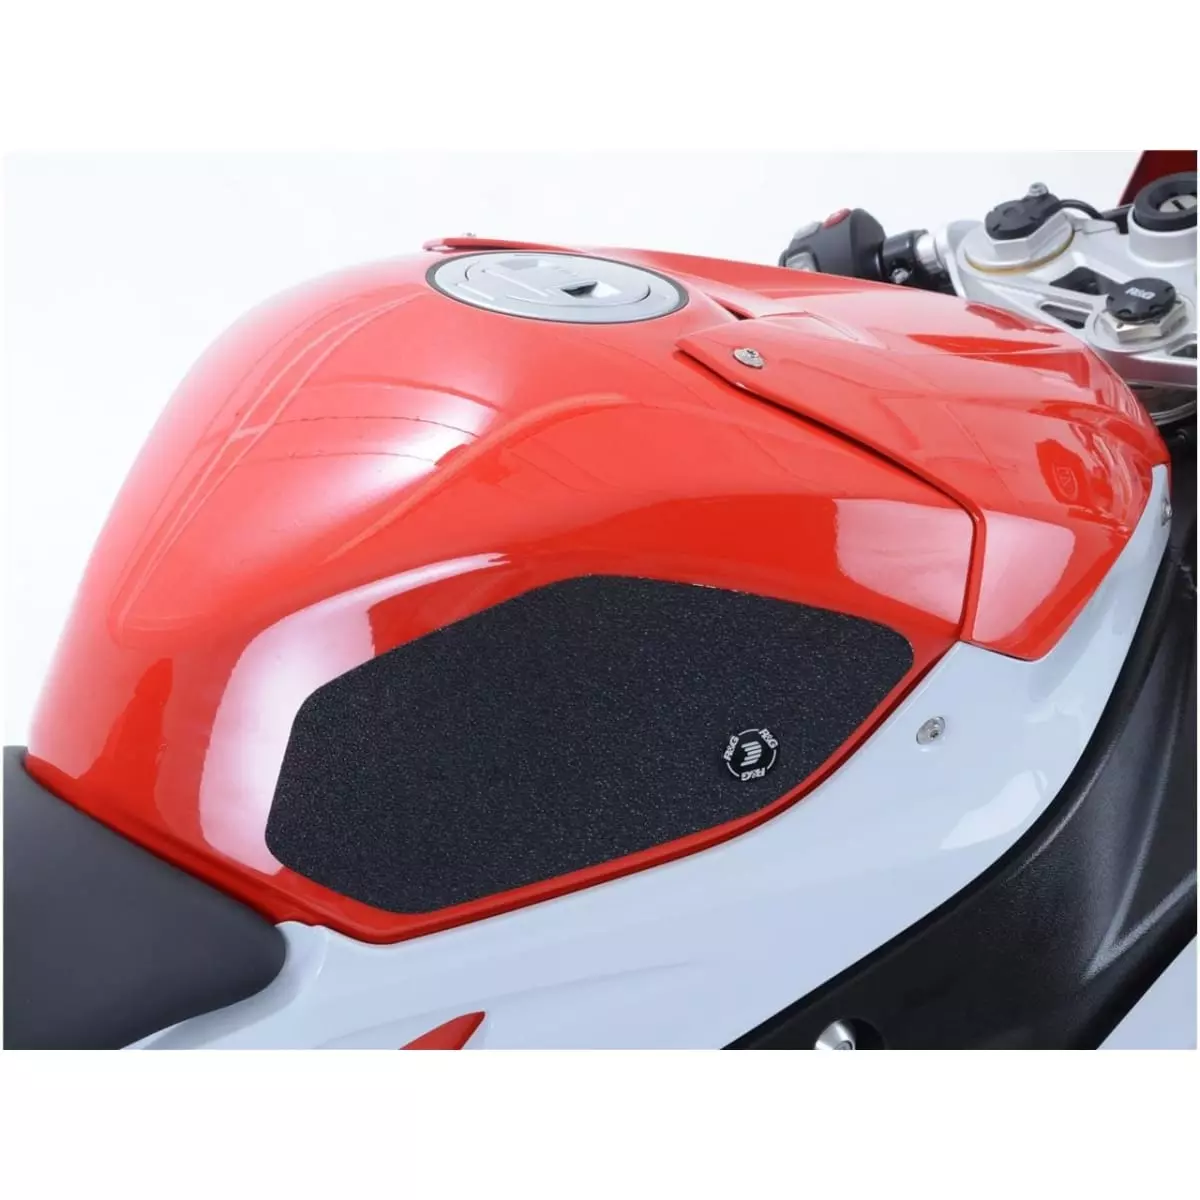 Haute Qualité Moto Réservoir De Protection Côté Gaz Genou Grip Protecteur Pour BMWS1000RR 2010-2015 